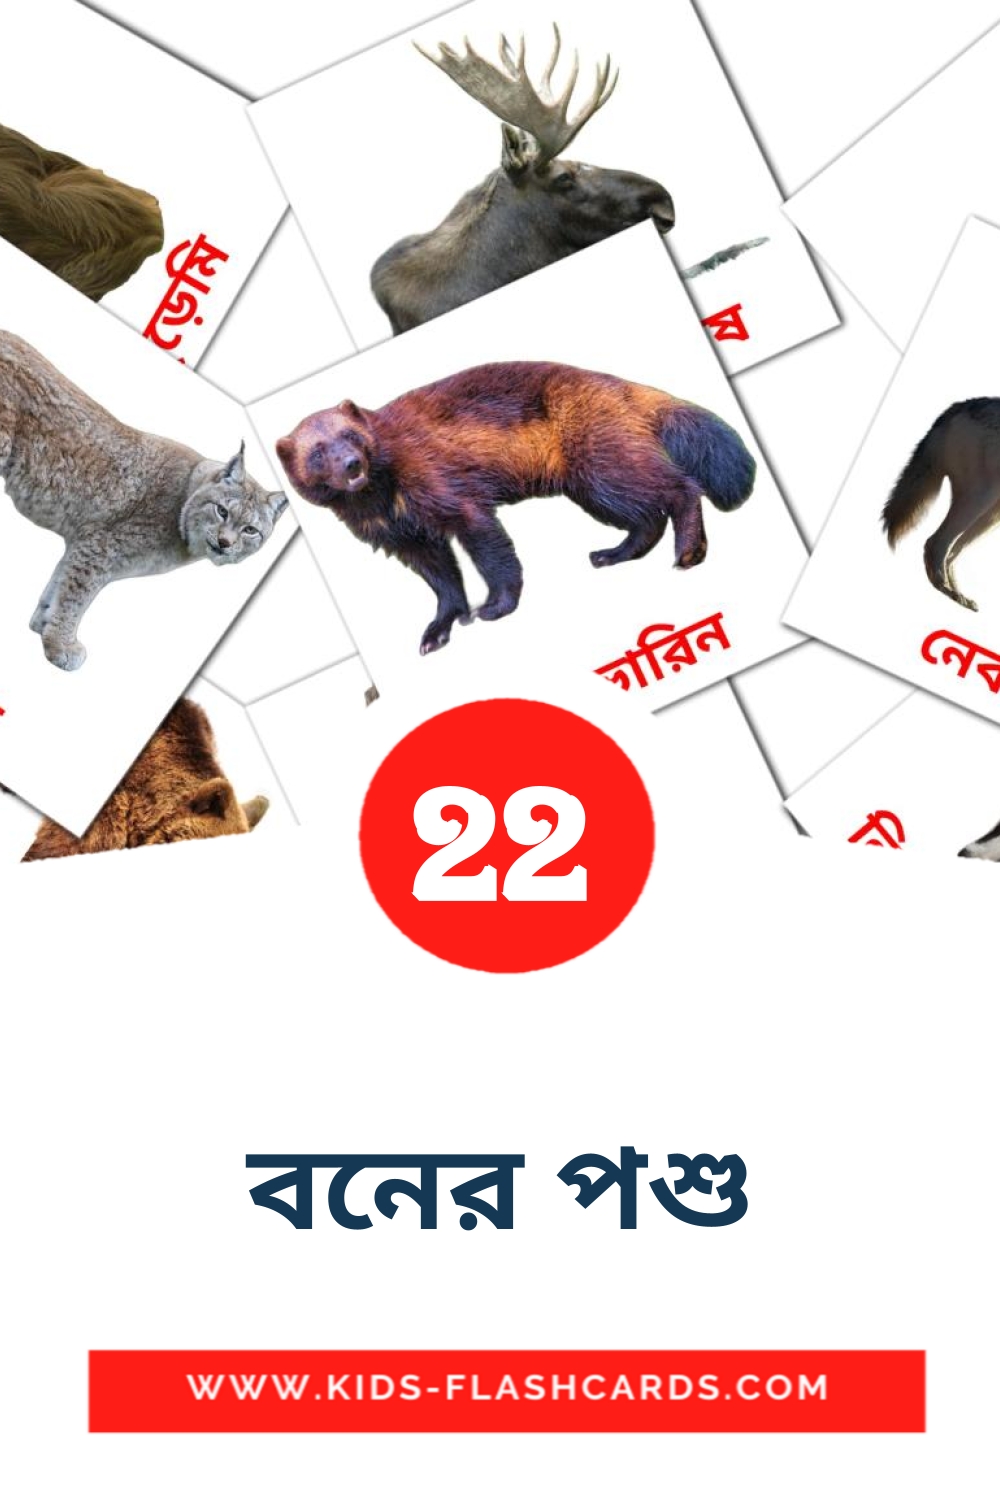 22 tarjetas didacticas de বনের পশু para el jardín de infancia en bengalí